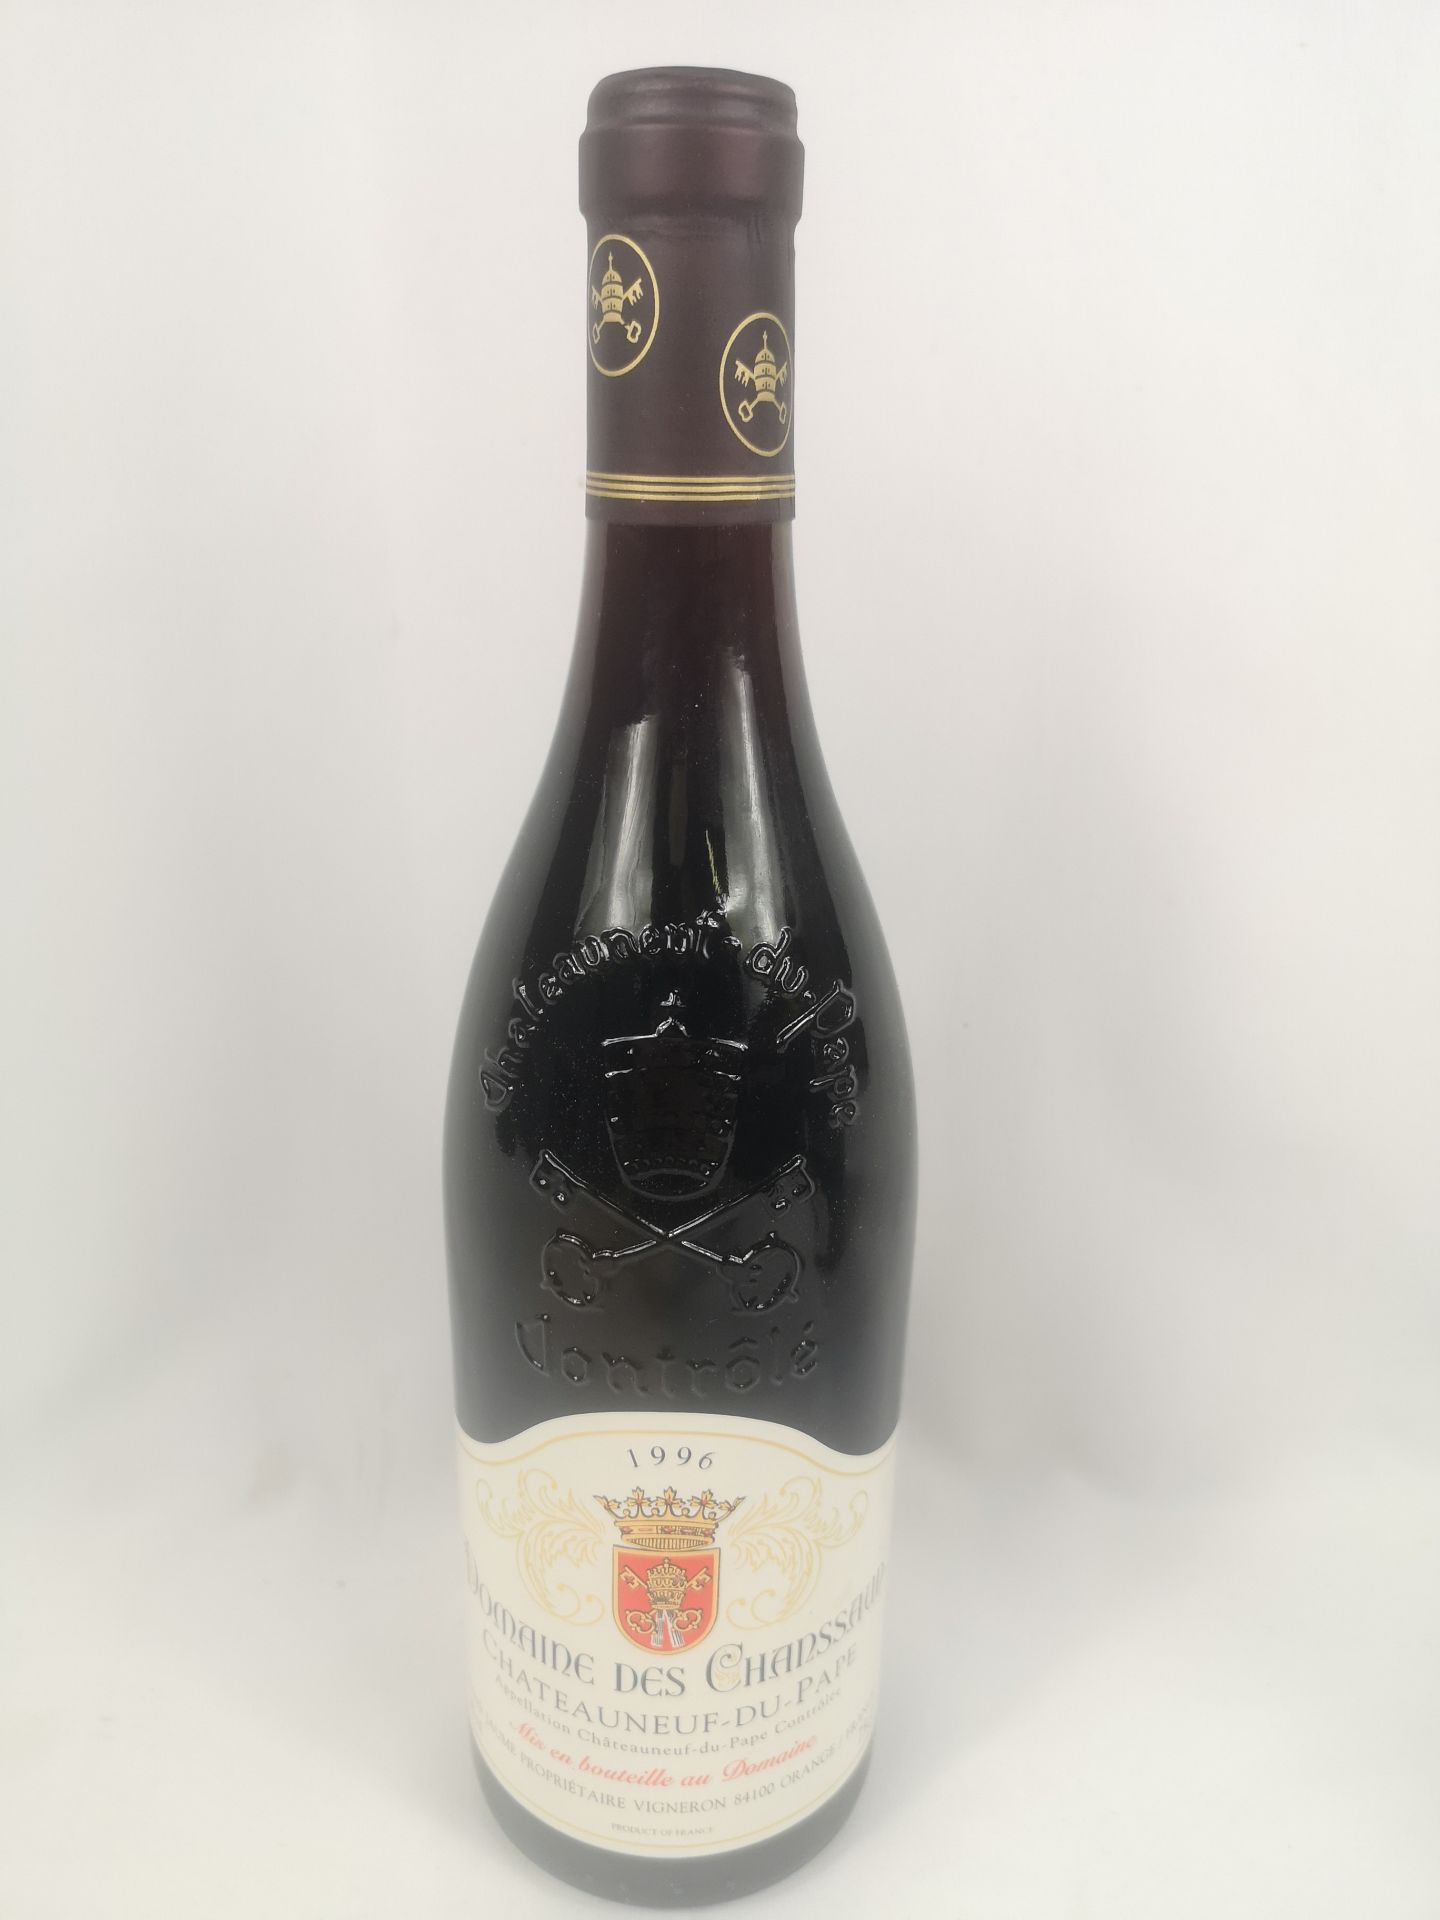 Eleven 75cl bottles of Domaine des Chanssaud Châteauneuf-du-Pape. - Image 2 of 5